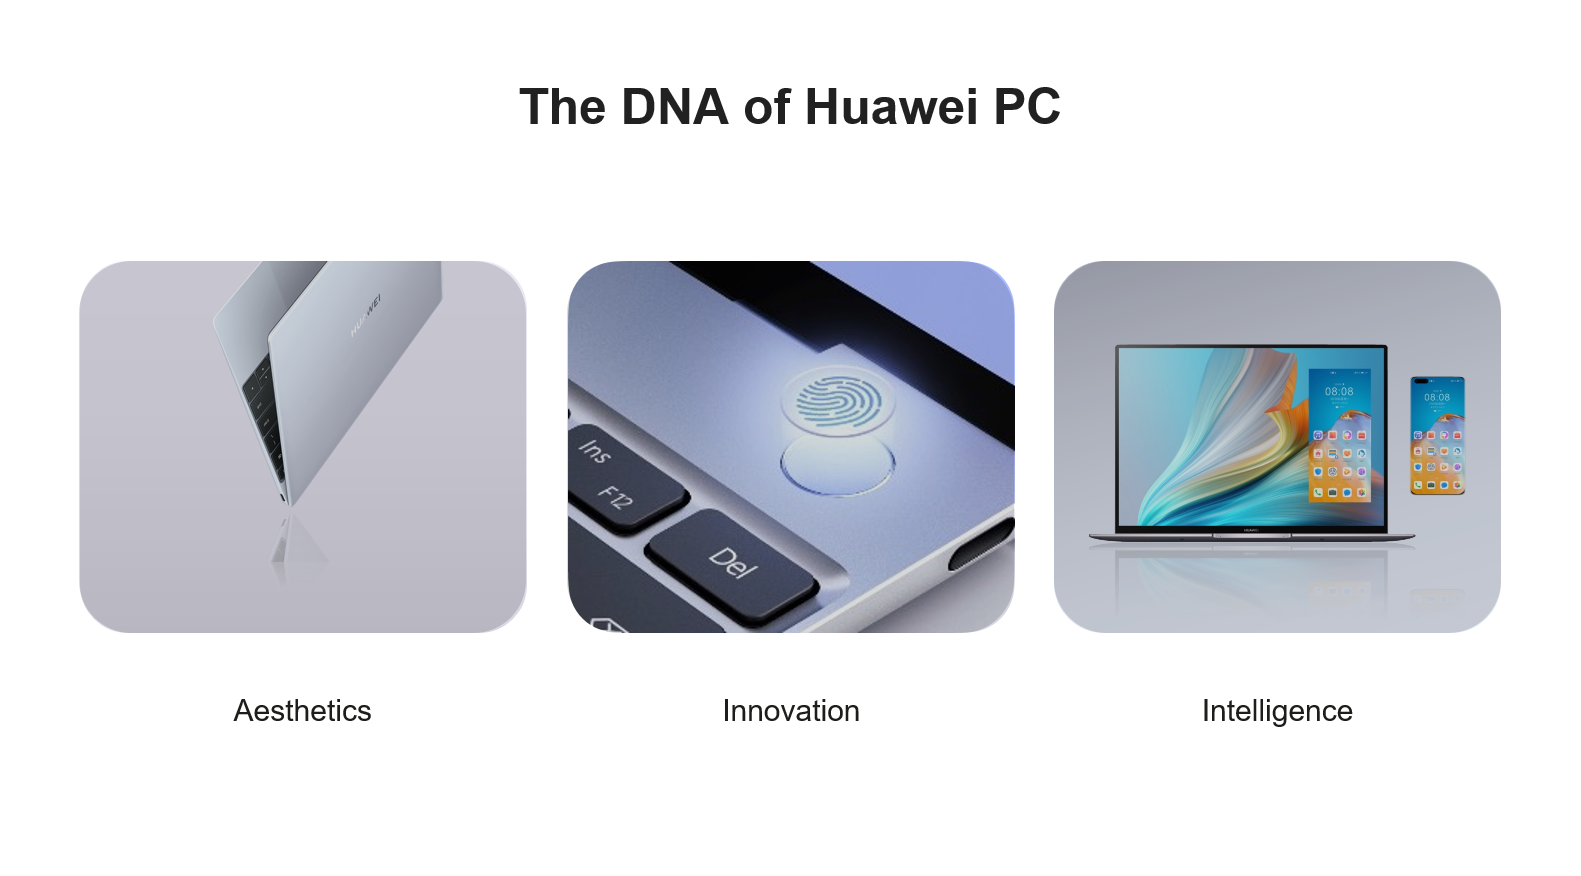 HUAWEI MateBook DNA | Huawei | การเดินทางกว่า 5 ปีของหัวเว่ย จากจุดเริ่มต้นสู่ความล้ำหน้าทุกเทคโนโลยี  พัฒนามาอย่างต่อเนื่องจนถึง HUAWEI MateBook 14 ในวันนี้